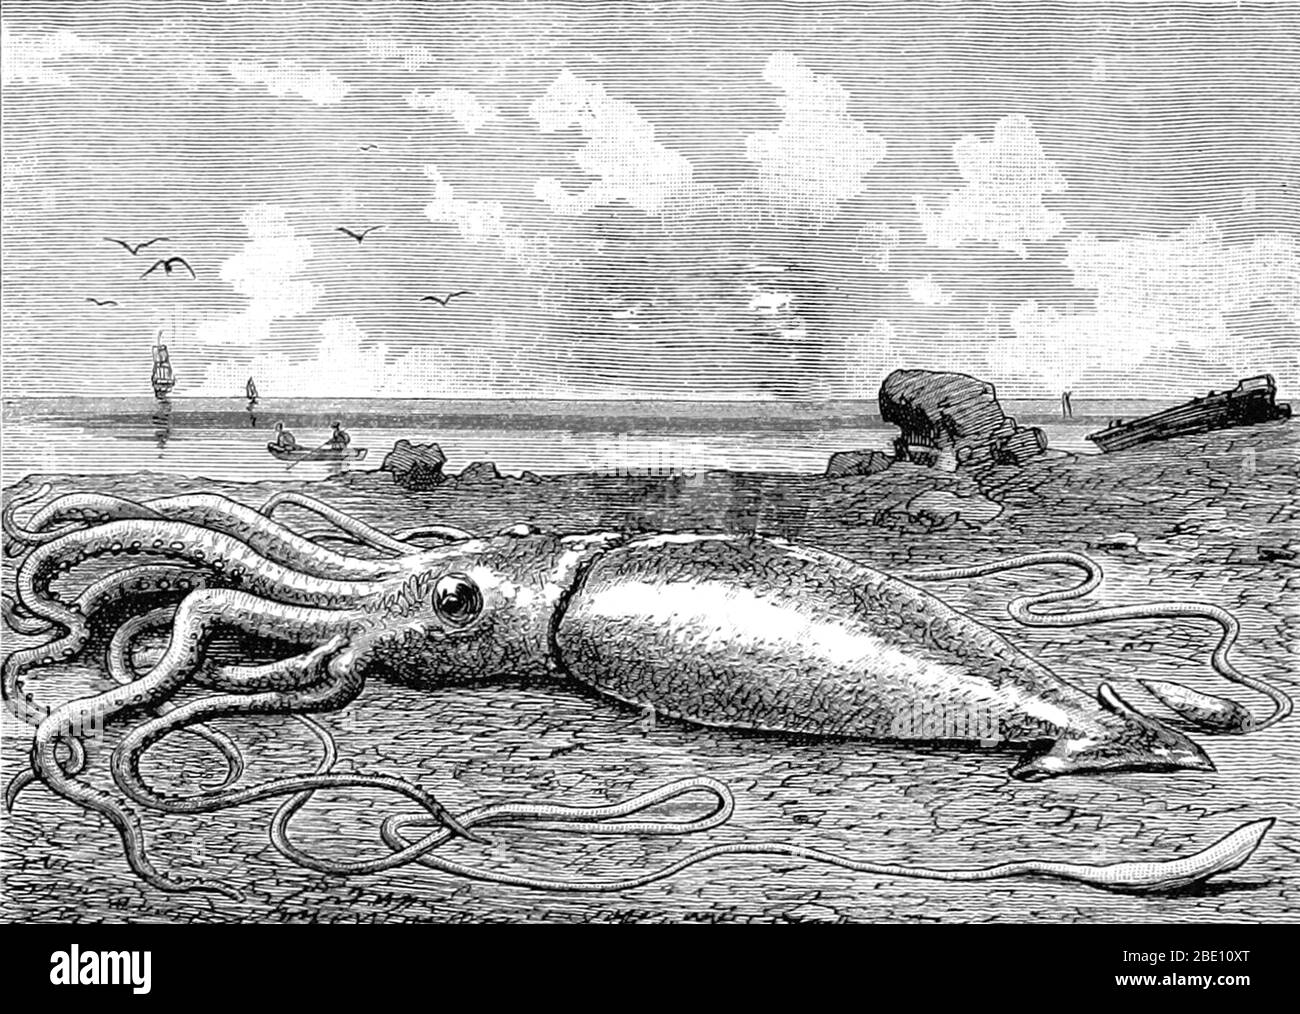 Il calamaro gigante (genere Architeuthis) è un calamaro della famiglia Architeuthidae che abita in profondità nell'oceano. Calamari giganti possono crescere ad una dimensione tremenda a causa del gigantismo di mare profondo: Stime recenti mettere la dimensione massima a 43 piedi per le femmine e 33 piedi per i maschi dalle pinne posteriori alla punta dei due tentacoli lunghi. Il mantello è lungo circa 6.6 piedi (più per le femmine, meno per i maschi), e la lunghezza del calamaro che esclude i suoi tentacoli (ma che includono testa e braccia) raramente supera i 16 piedi. Le rivendicazioni di campioni di 66 piedi o più non sono state documentate scientificamente. Racconti di calamari giganti hanno Foto Stock